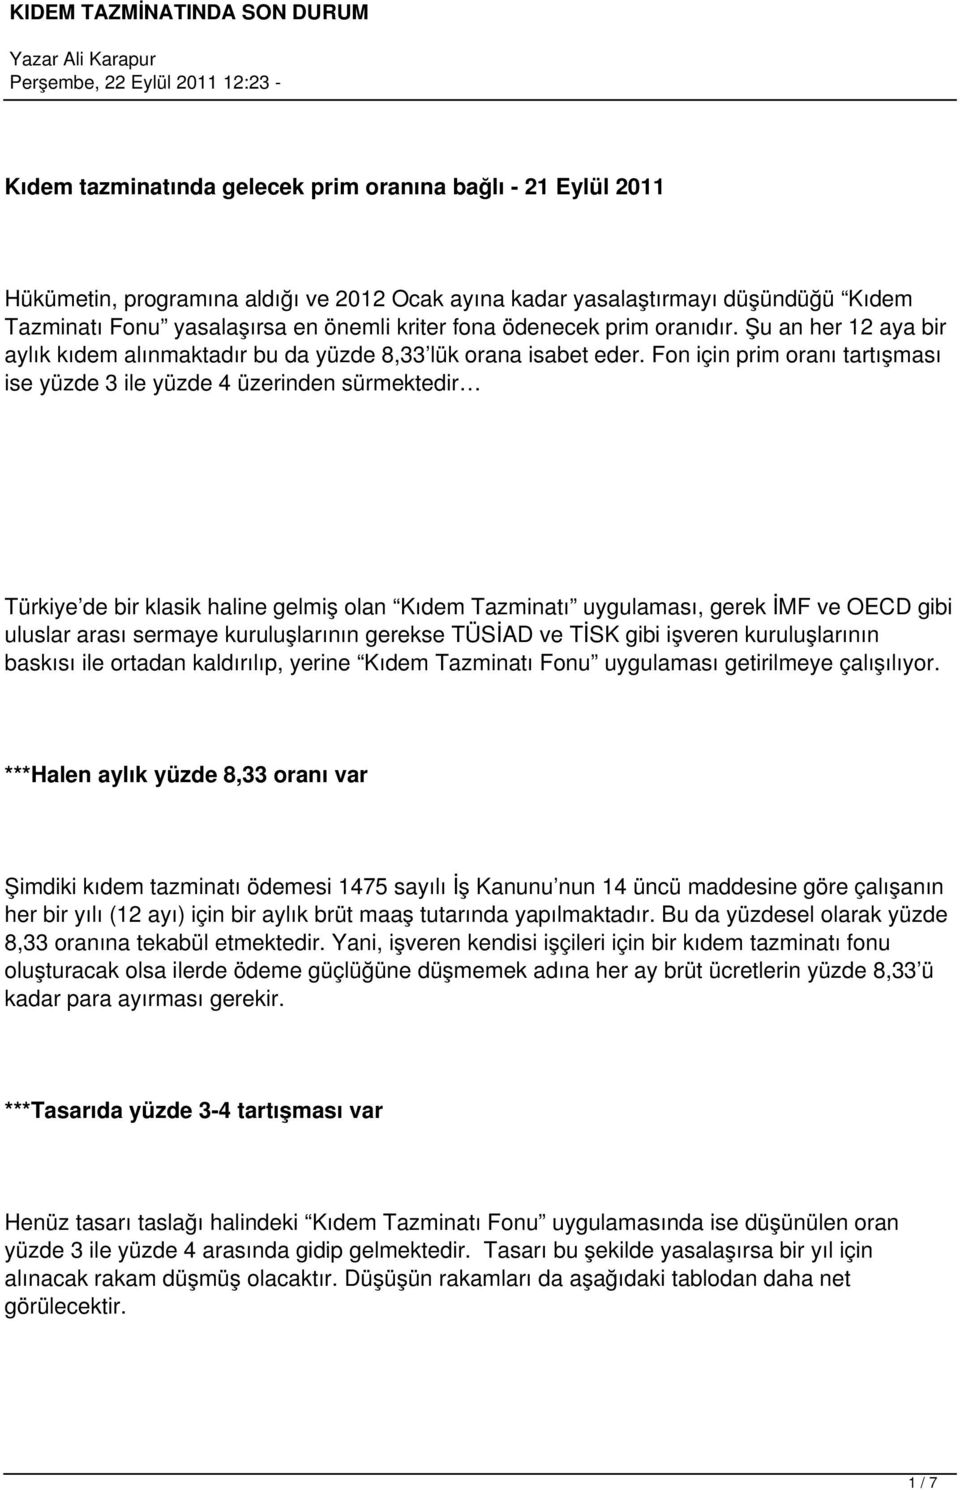 Fon için prim oranı tartışması ise yüzde 3 ile yüzde 4 üzerinden sürmektedir Türkiye de bir klasik haline gelmiş olan Kıdem Tazminatı uygulaması, gerek İMF ve OECD gibi uluslar arası sermaye